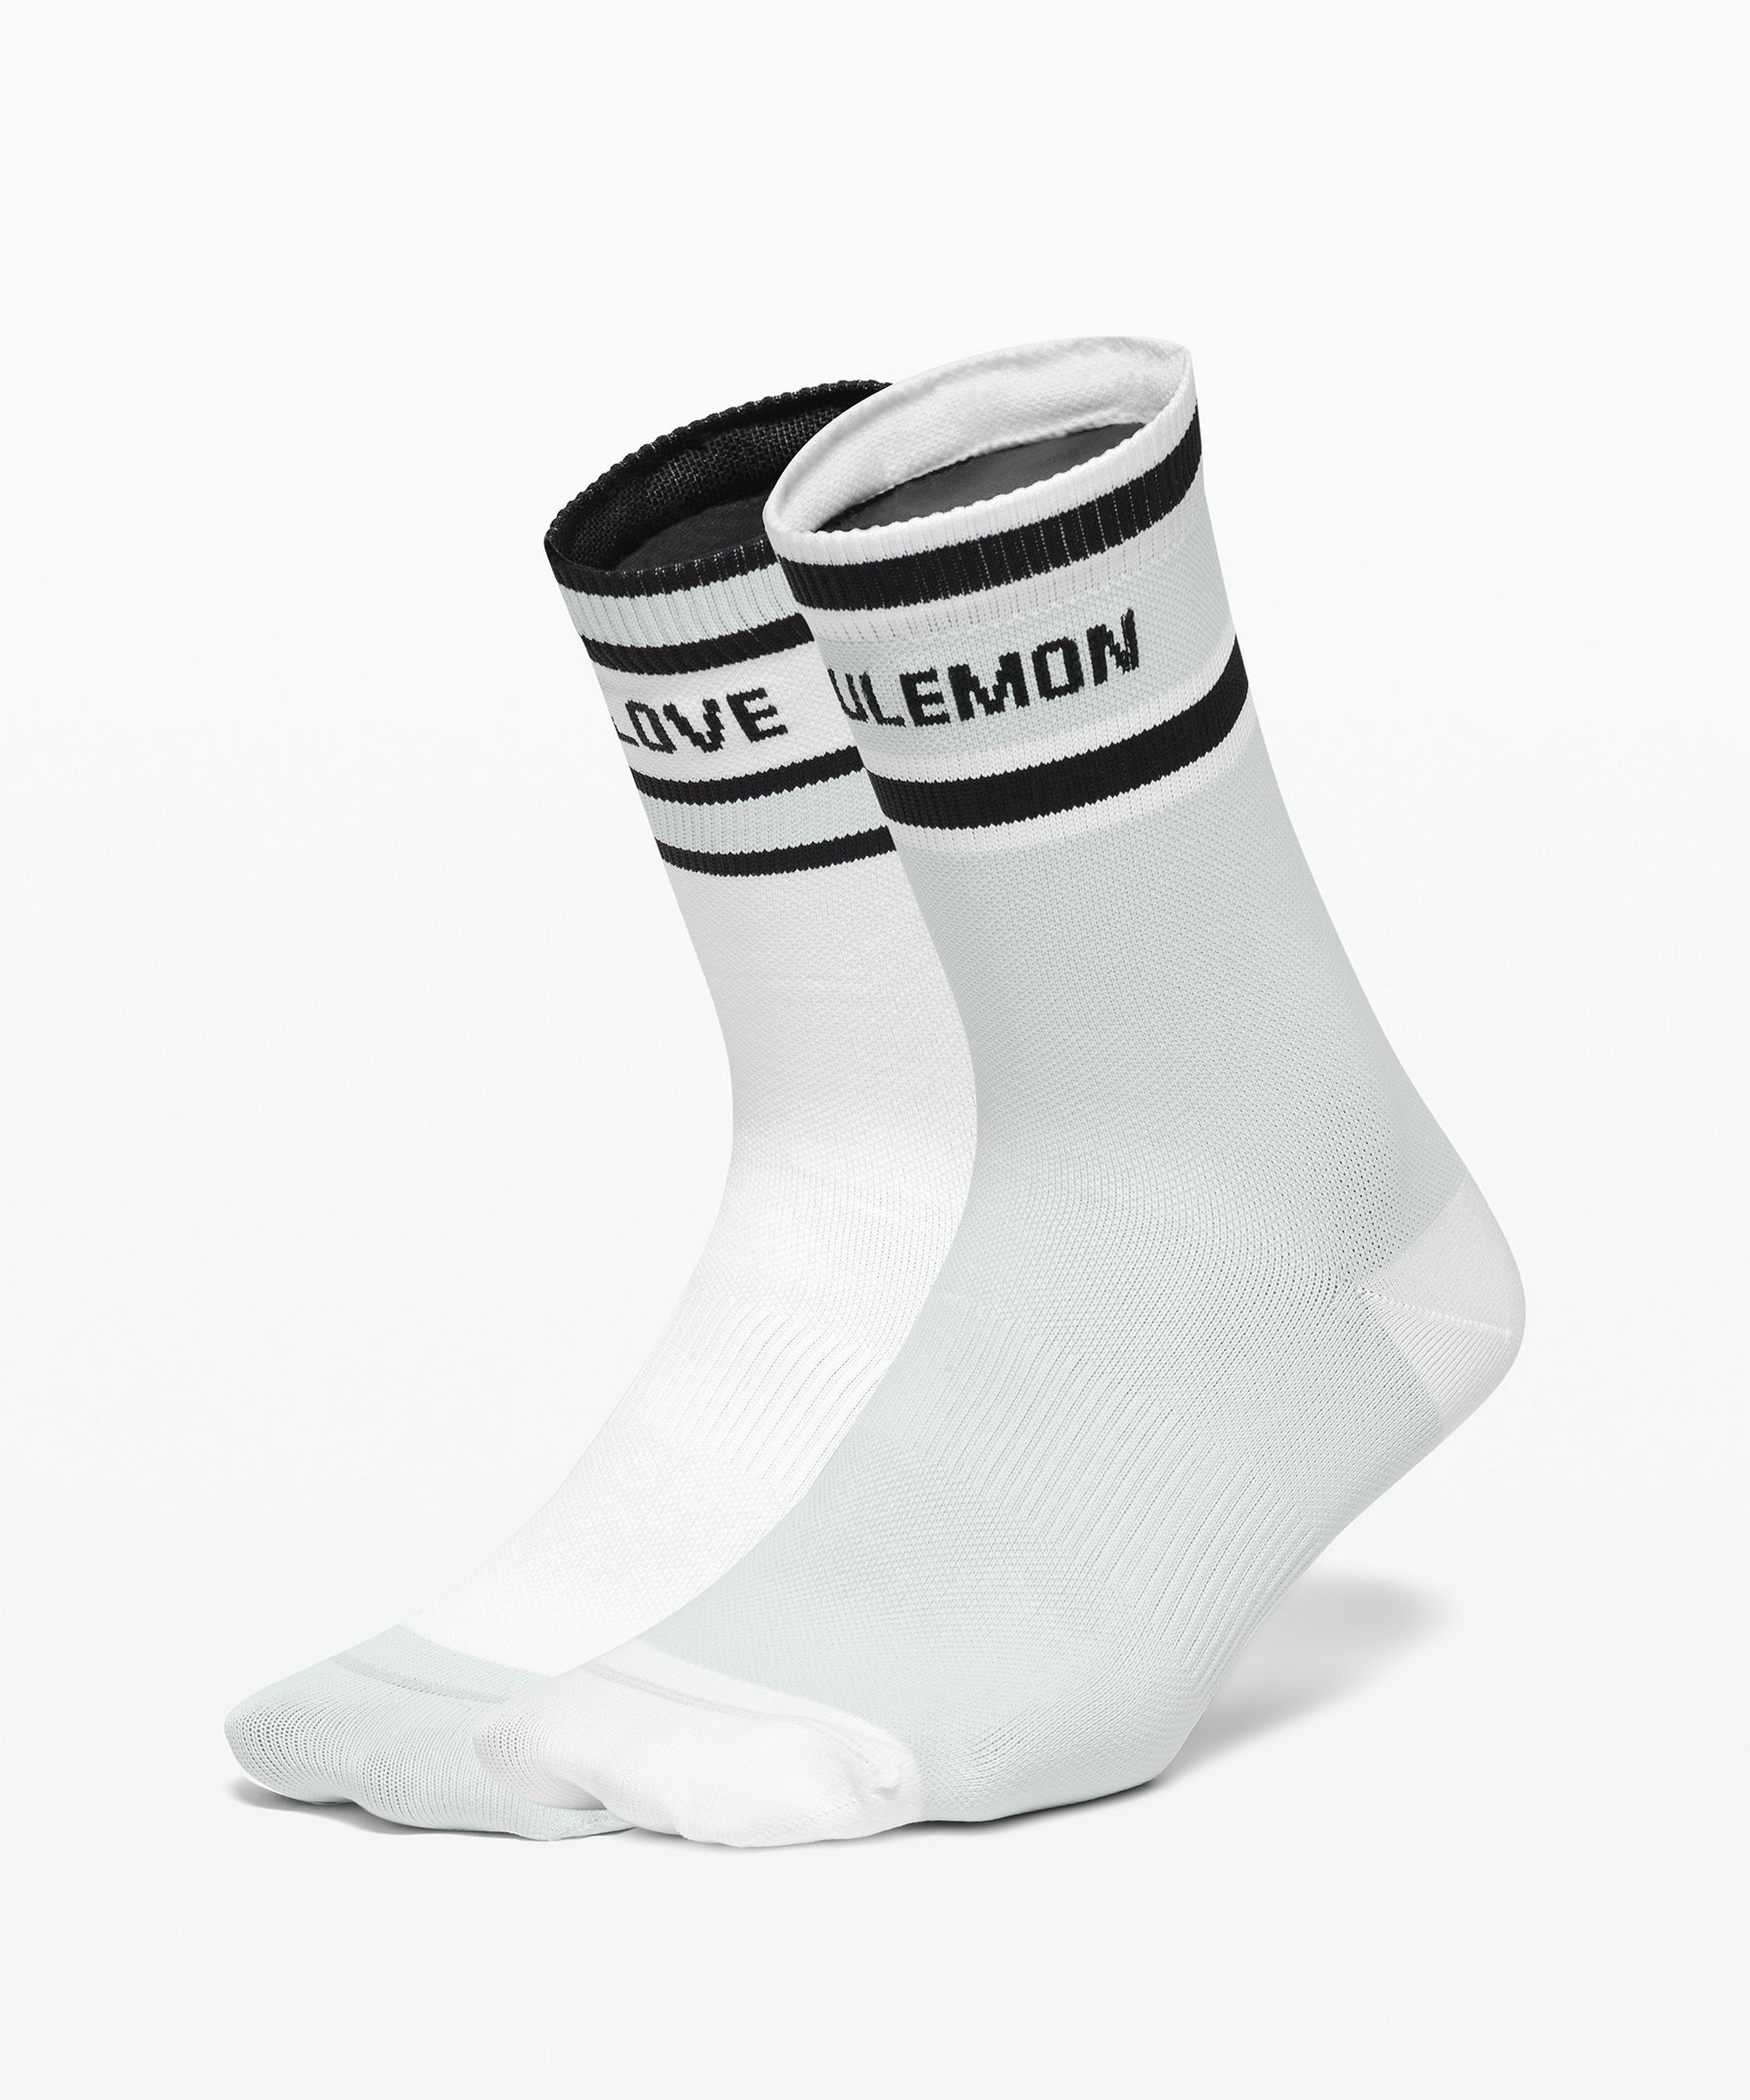 lululemon crew socks